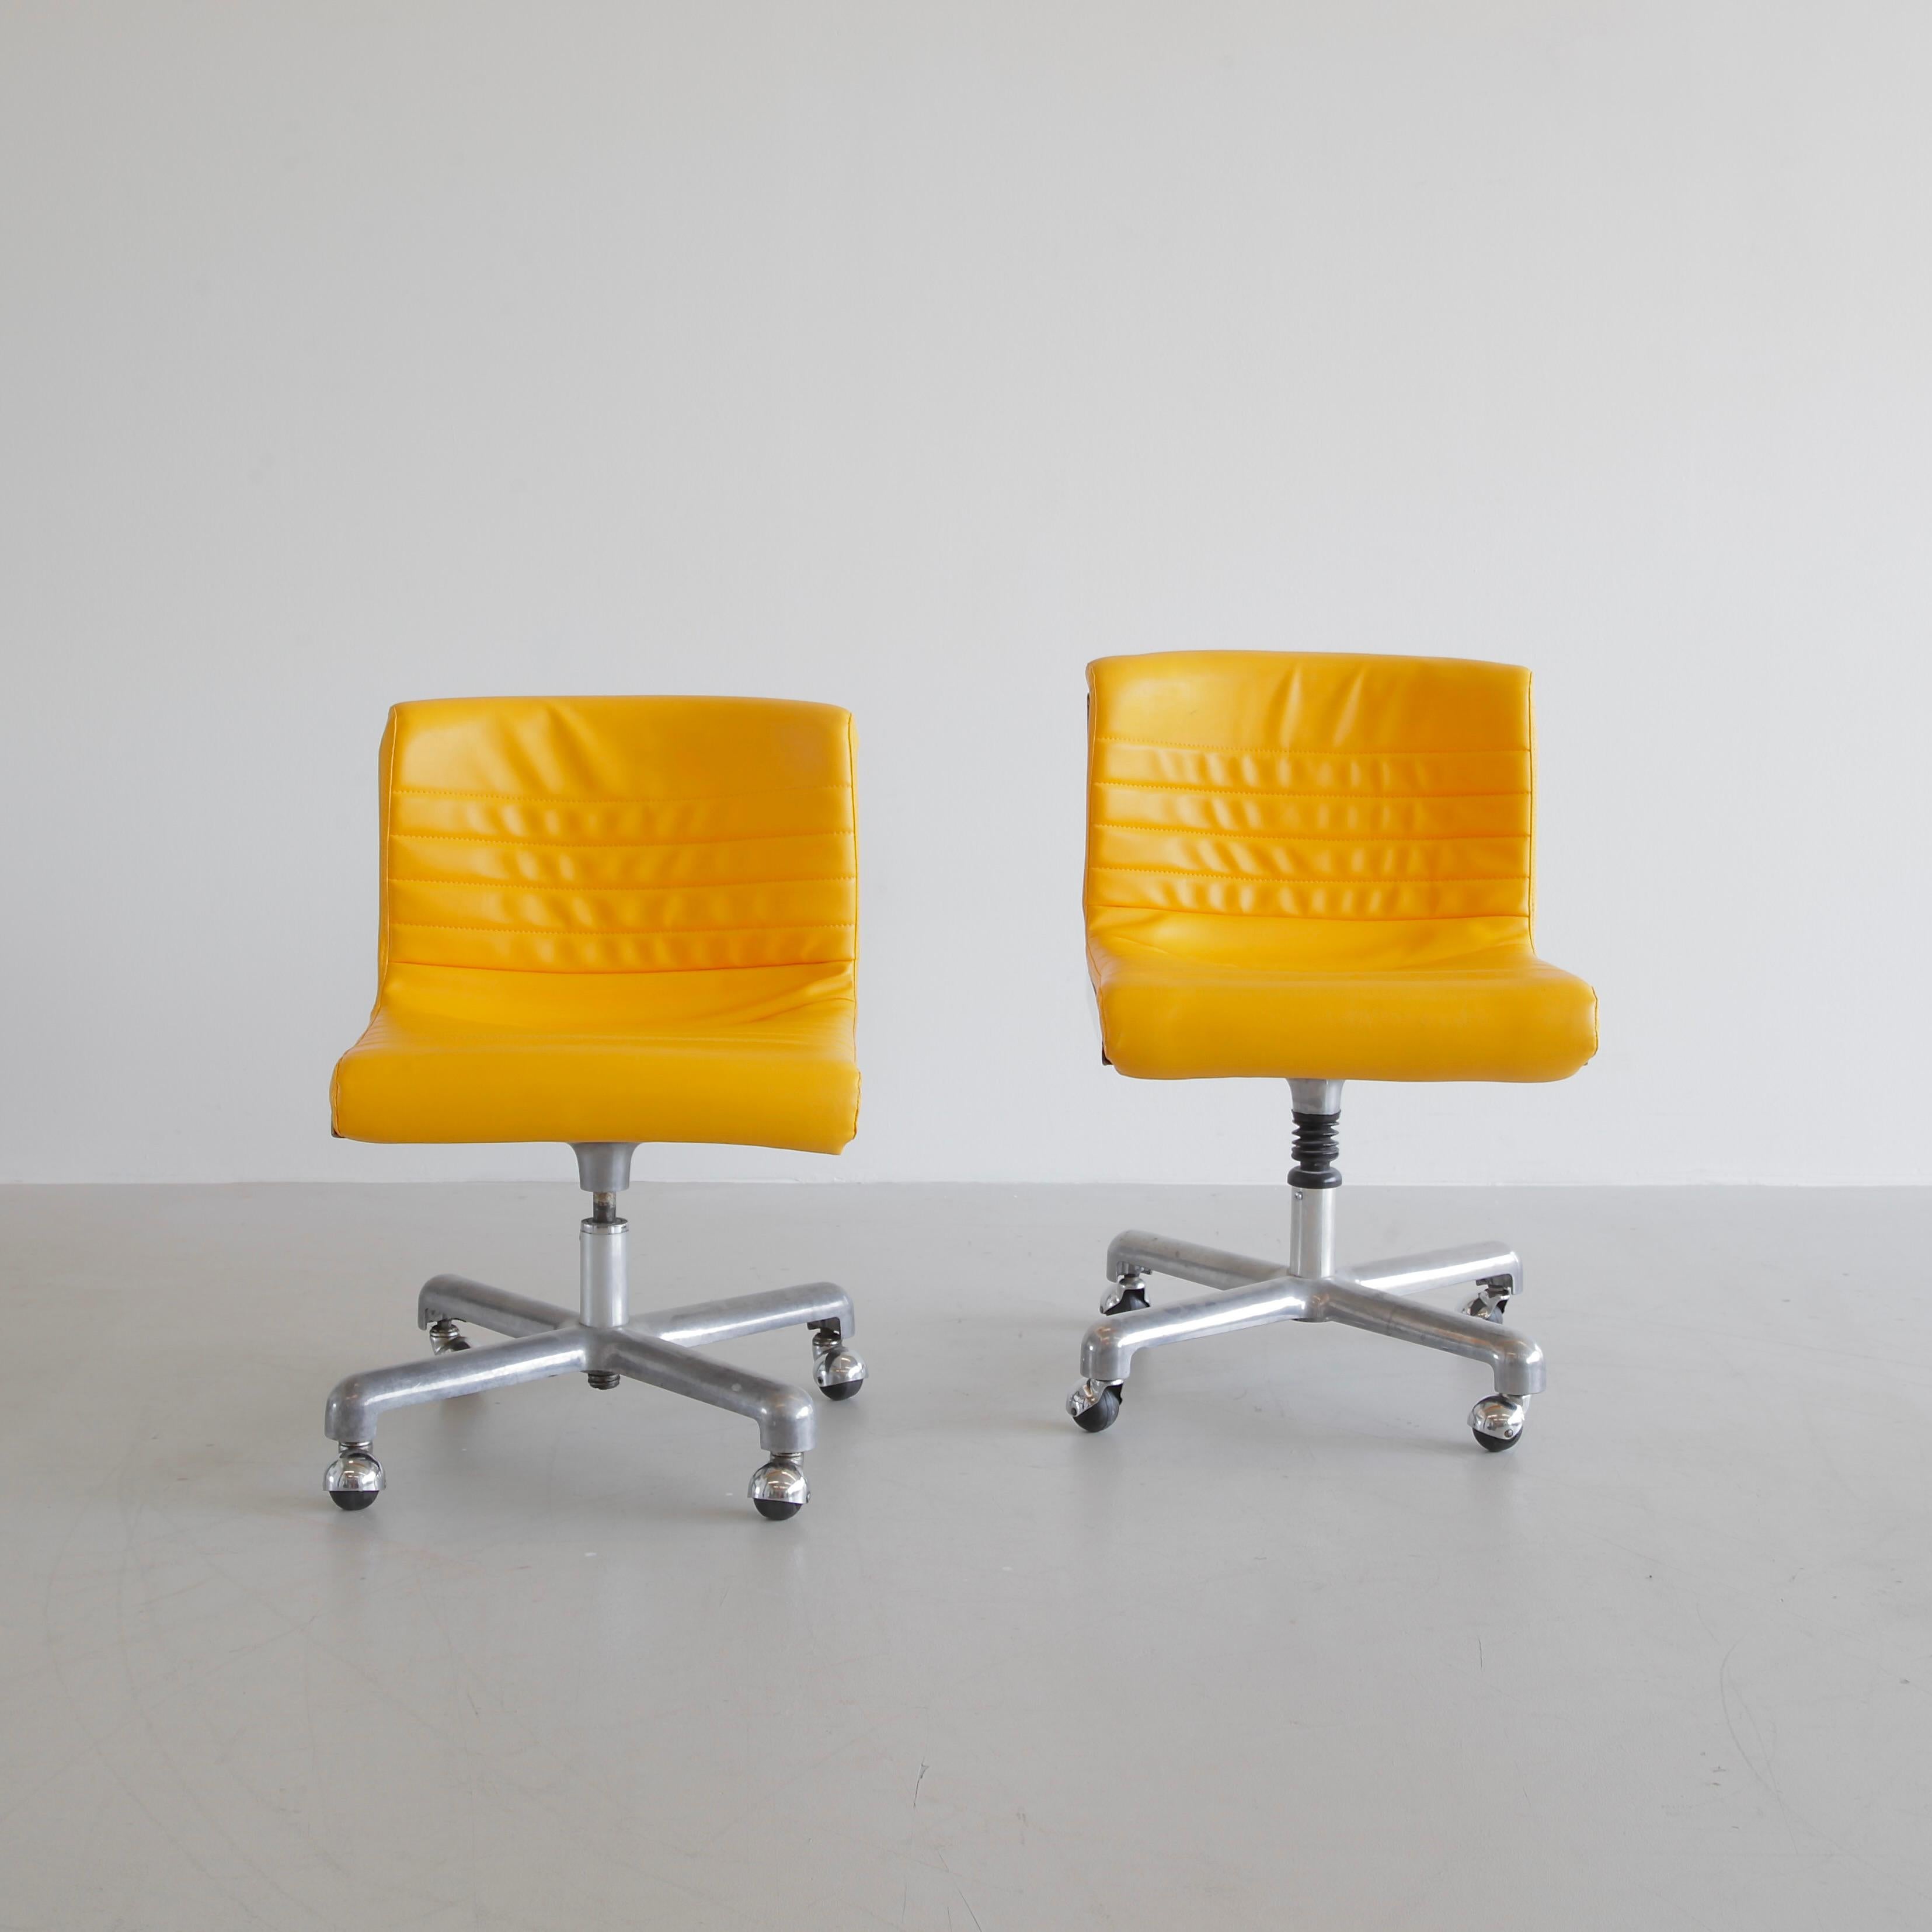 Paire de chaises de bureau conçues par Ettore Sottsass et Hans von Klier. Italie, Centre de design (Poltronova), 1969.

Un ensemble original de chaises pivotantes 'PROGRESS'. Revêtement en similicuir jaune, cadre en fonte d'aluminium avec